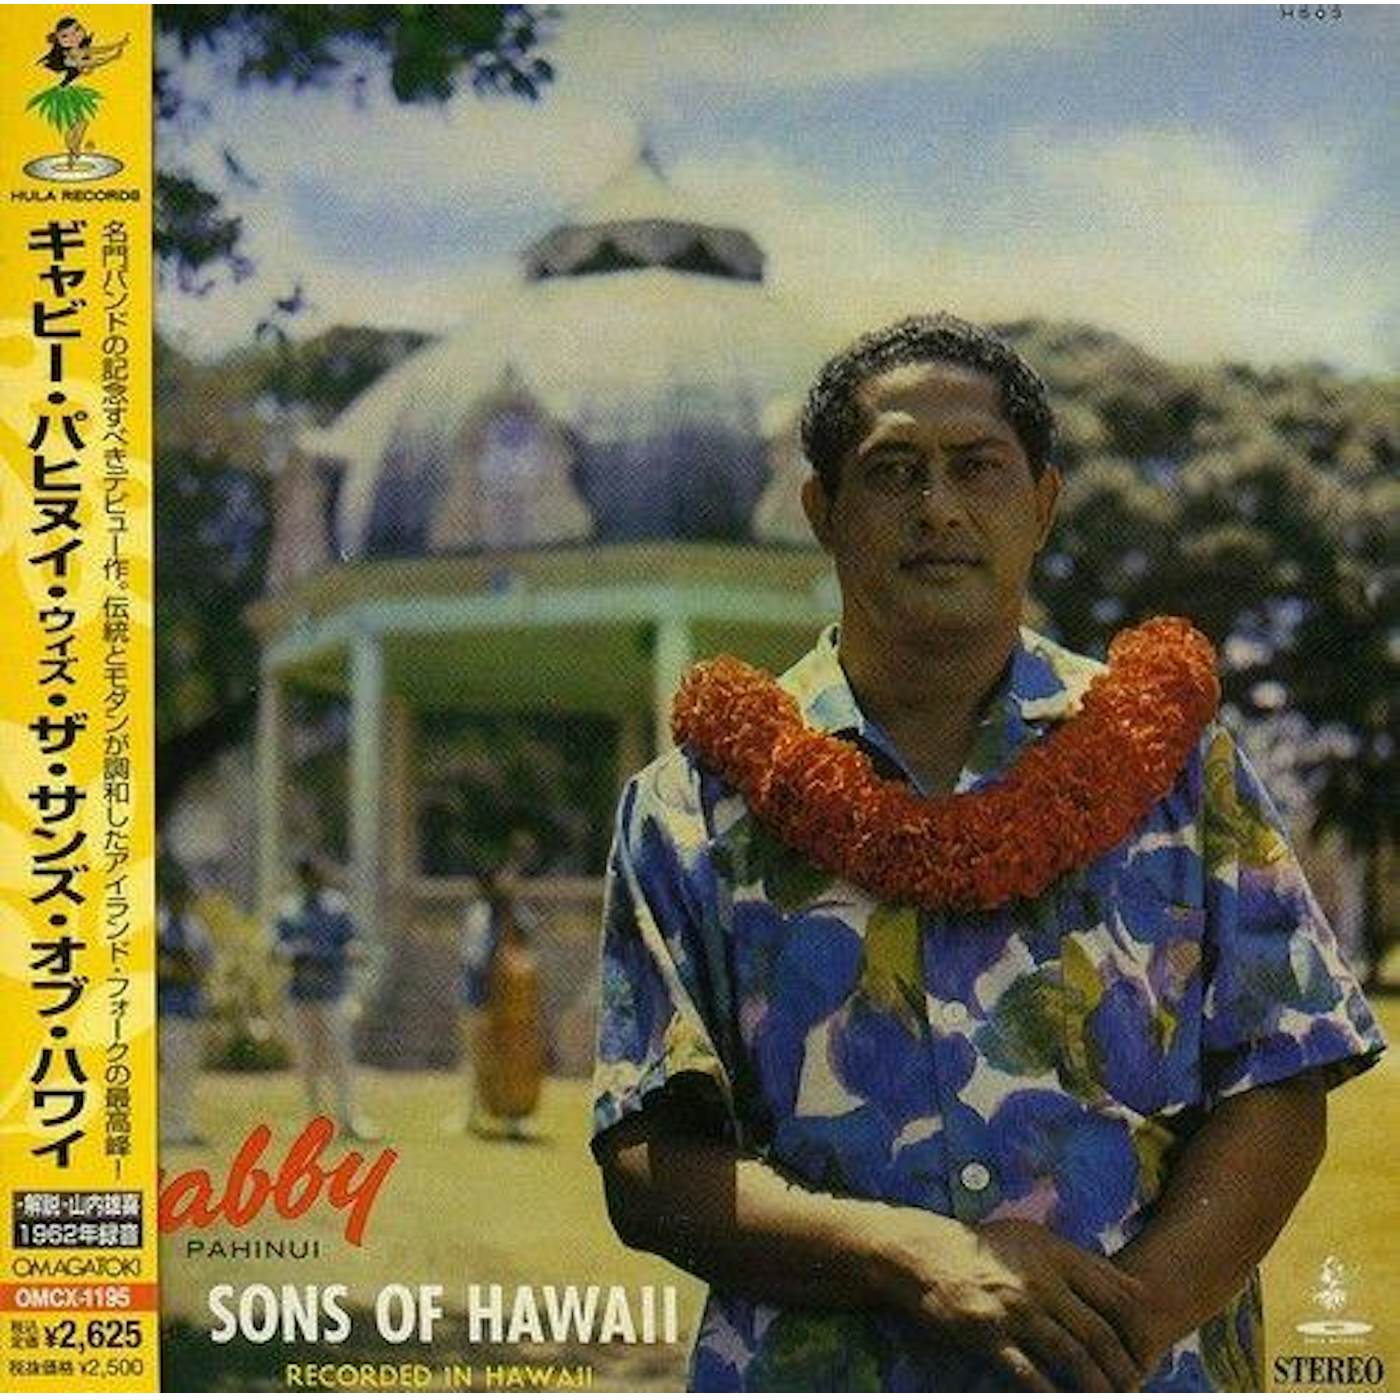 Gabby Pahinui WITH THE SONS OF HAWAII CD